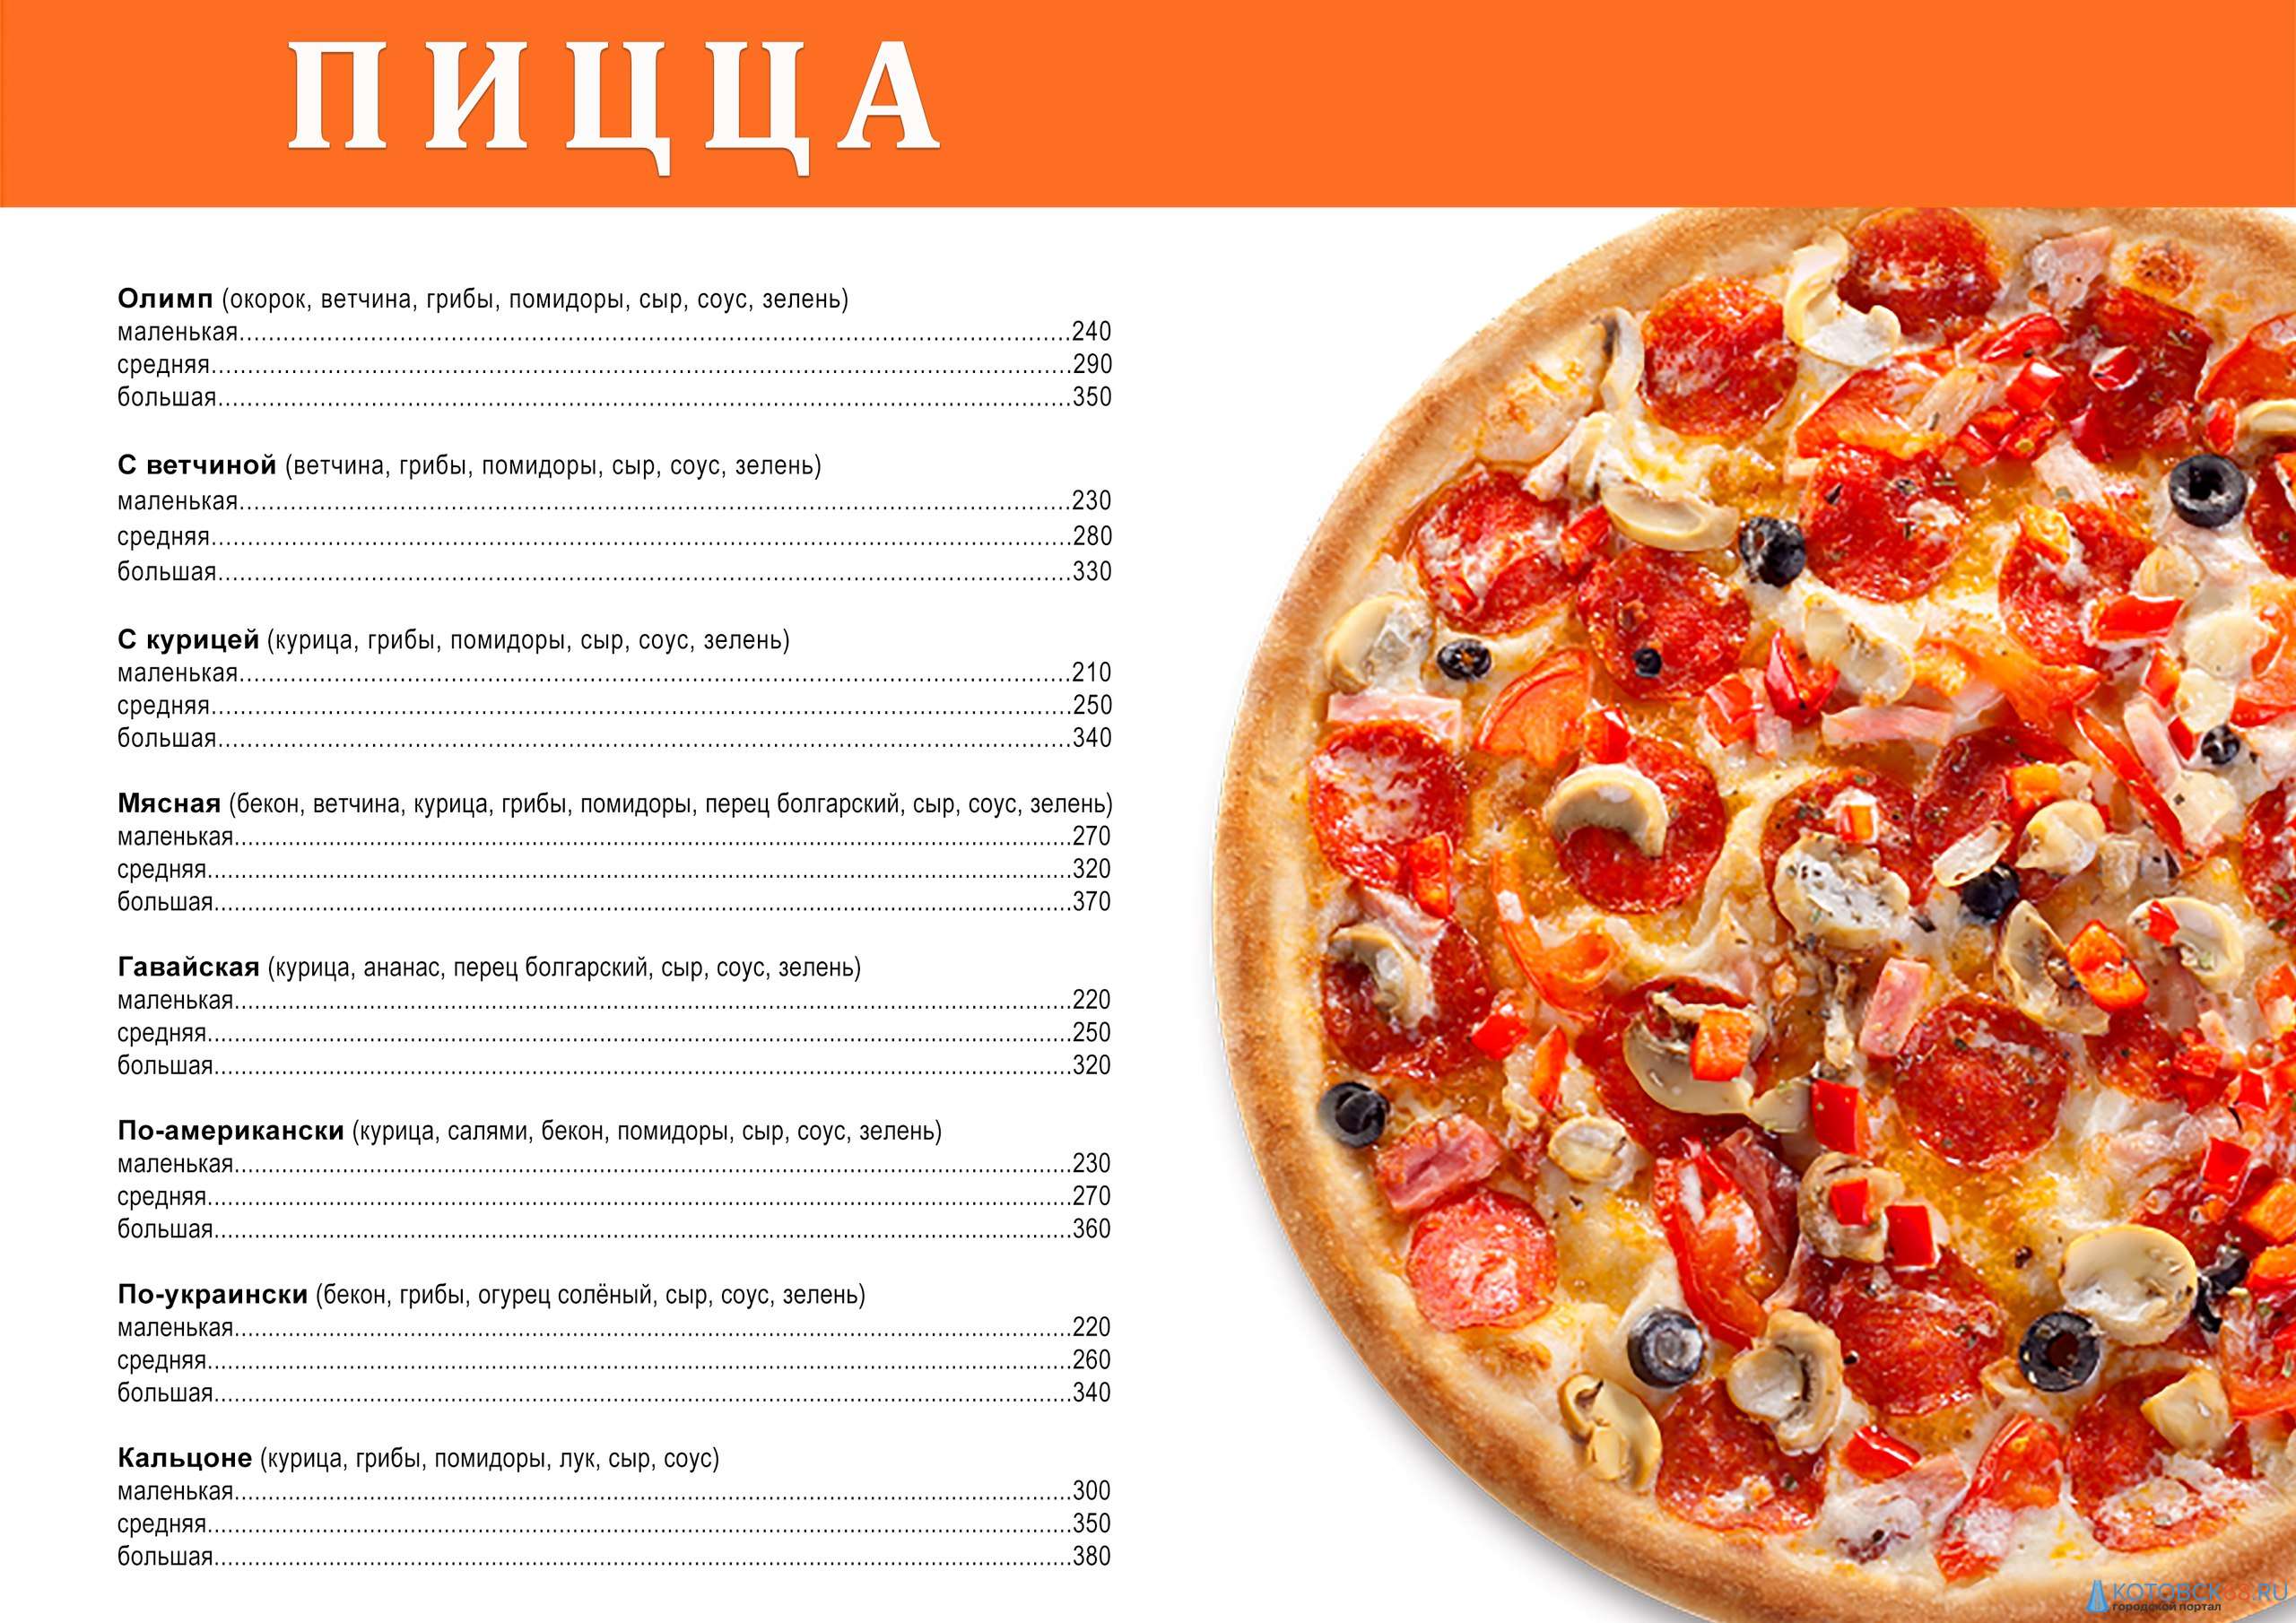 Бизнес-план доставки пиццы с расчетами. как открыть доставку пиццы с нуля